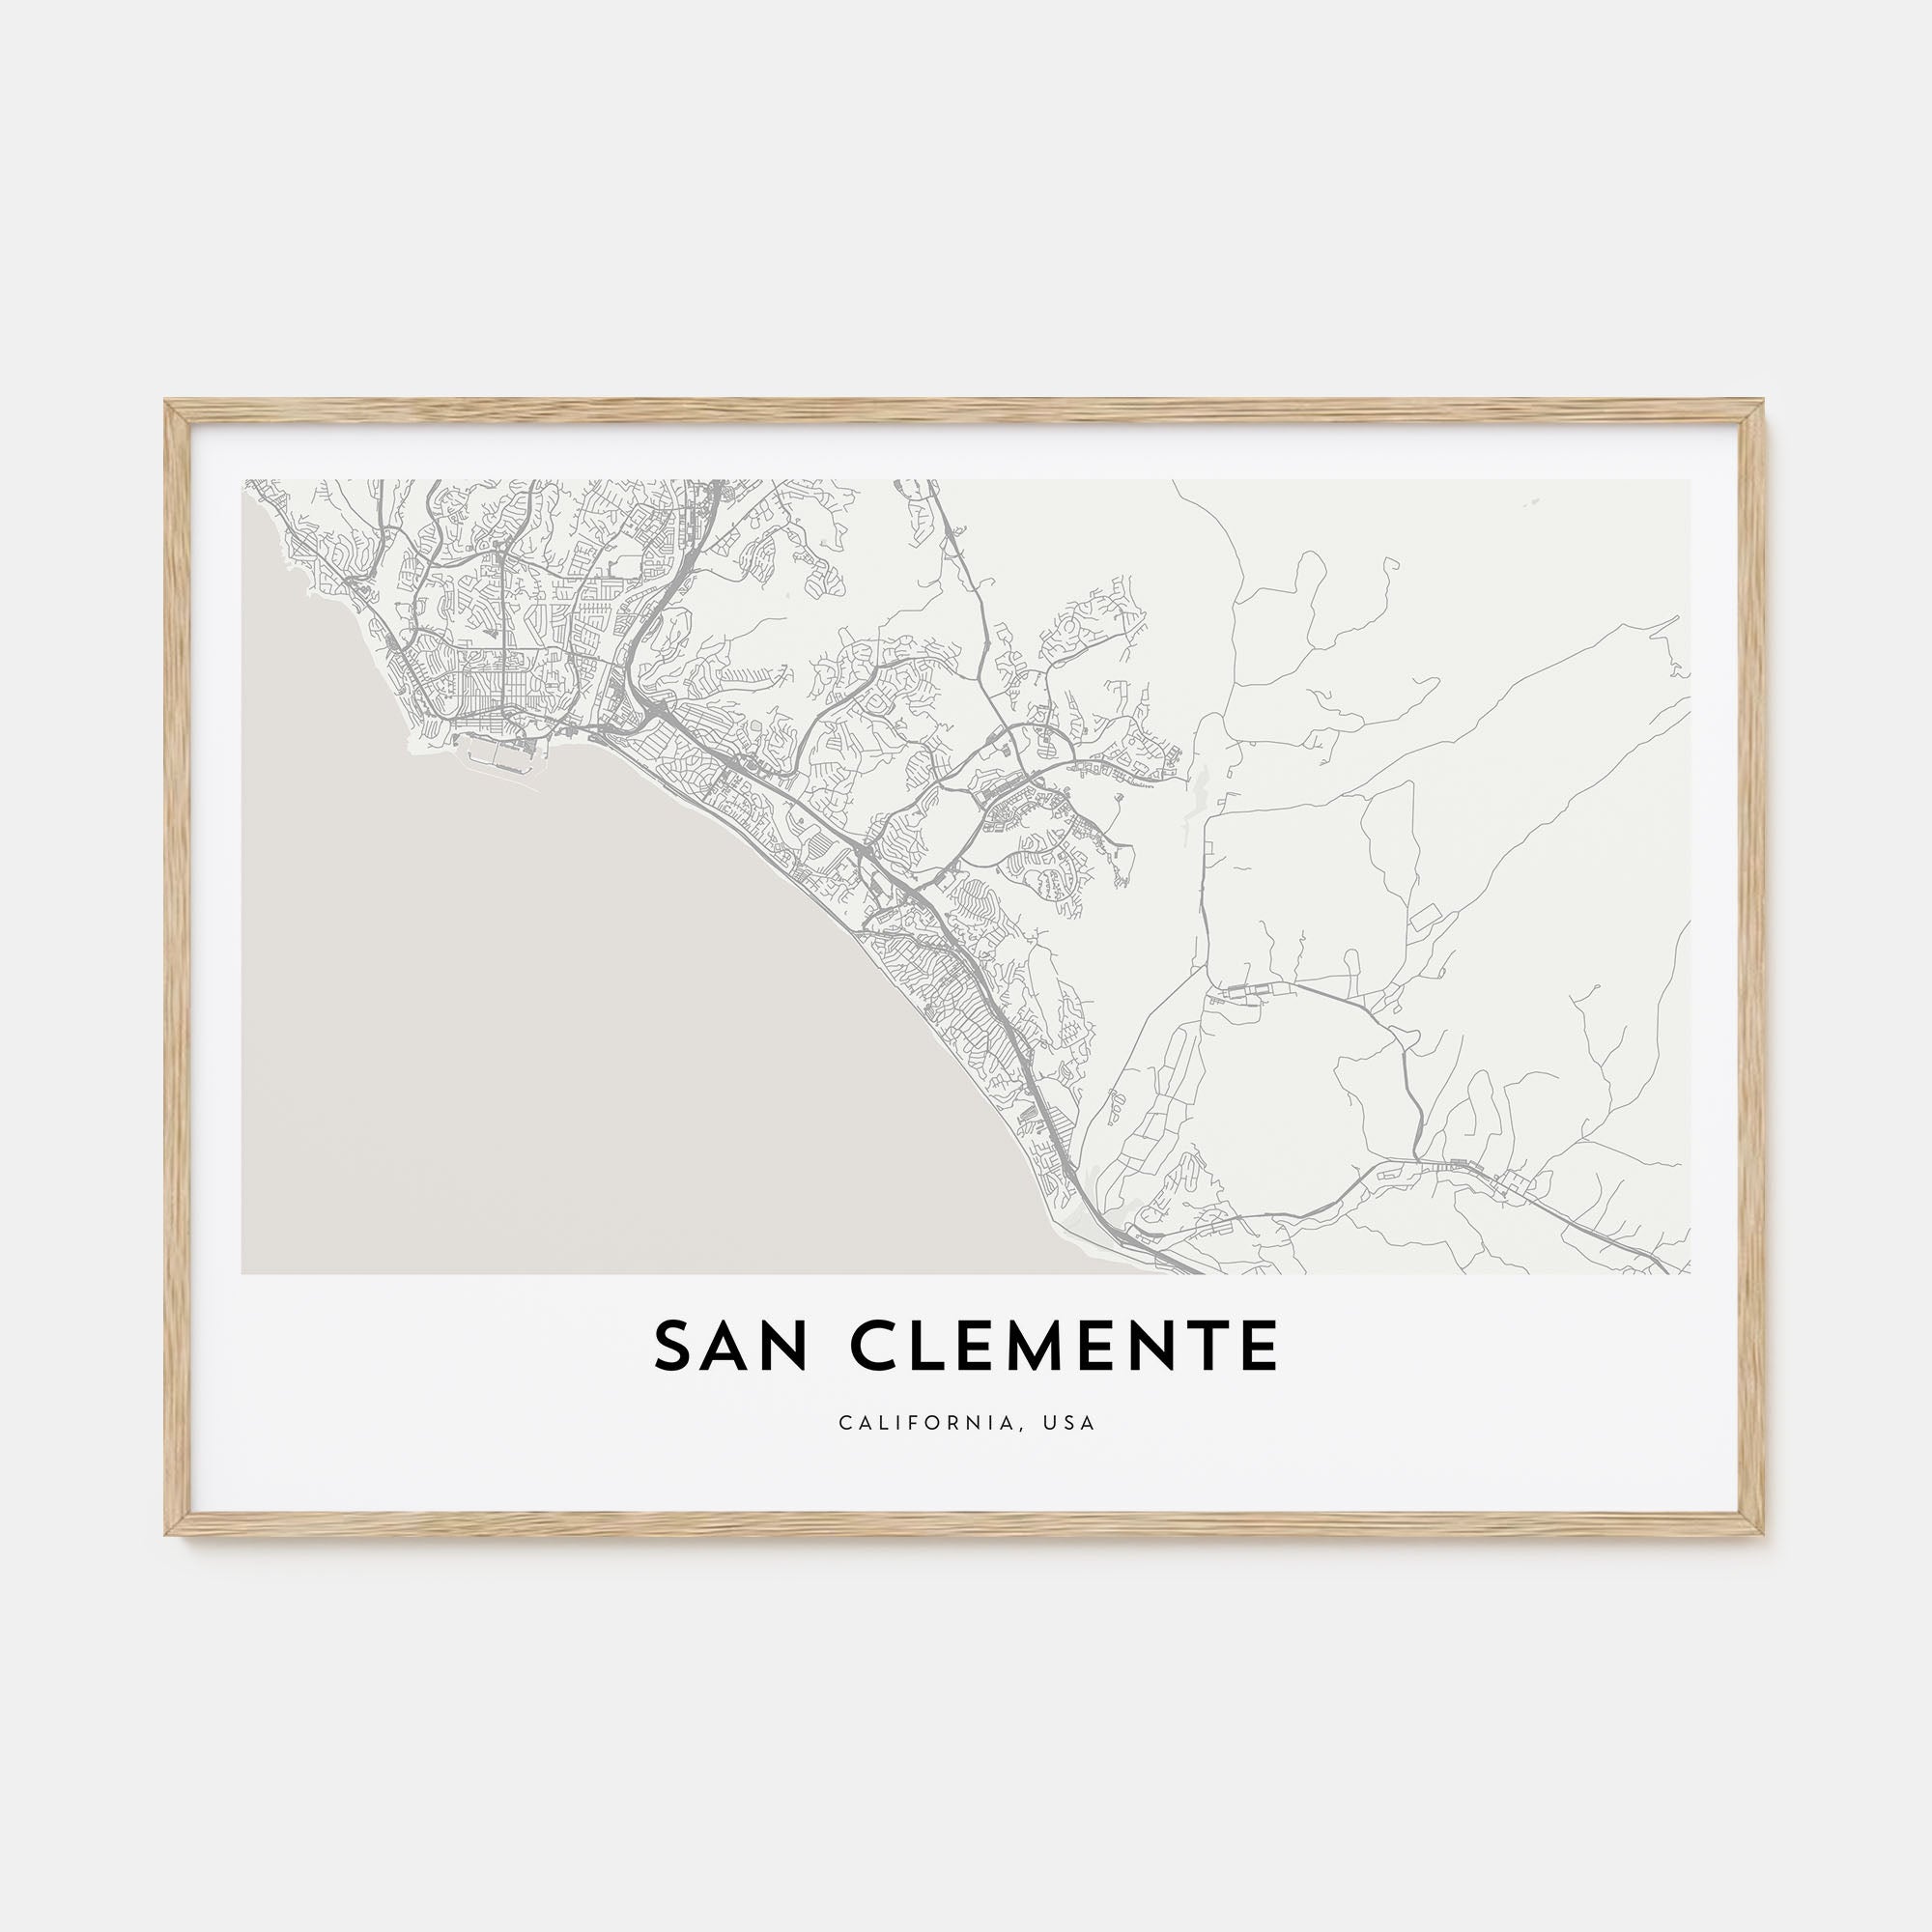 San Clemente Map Landscape Poster